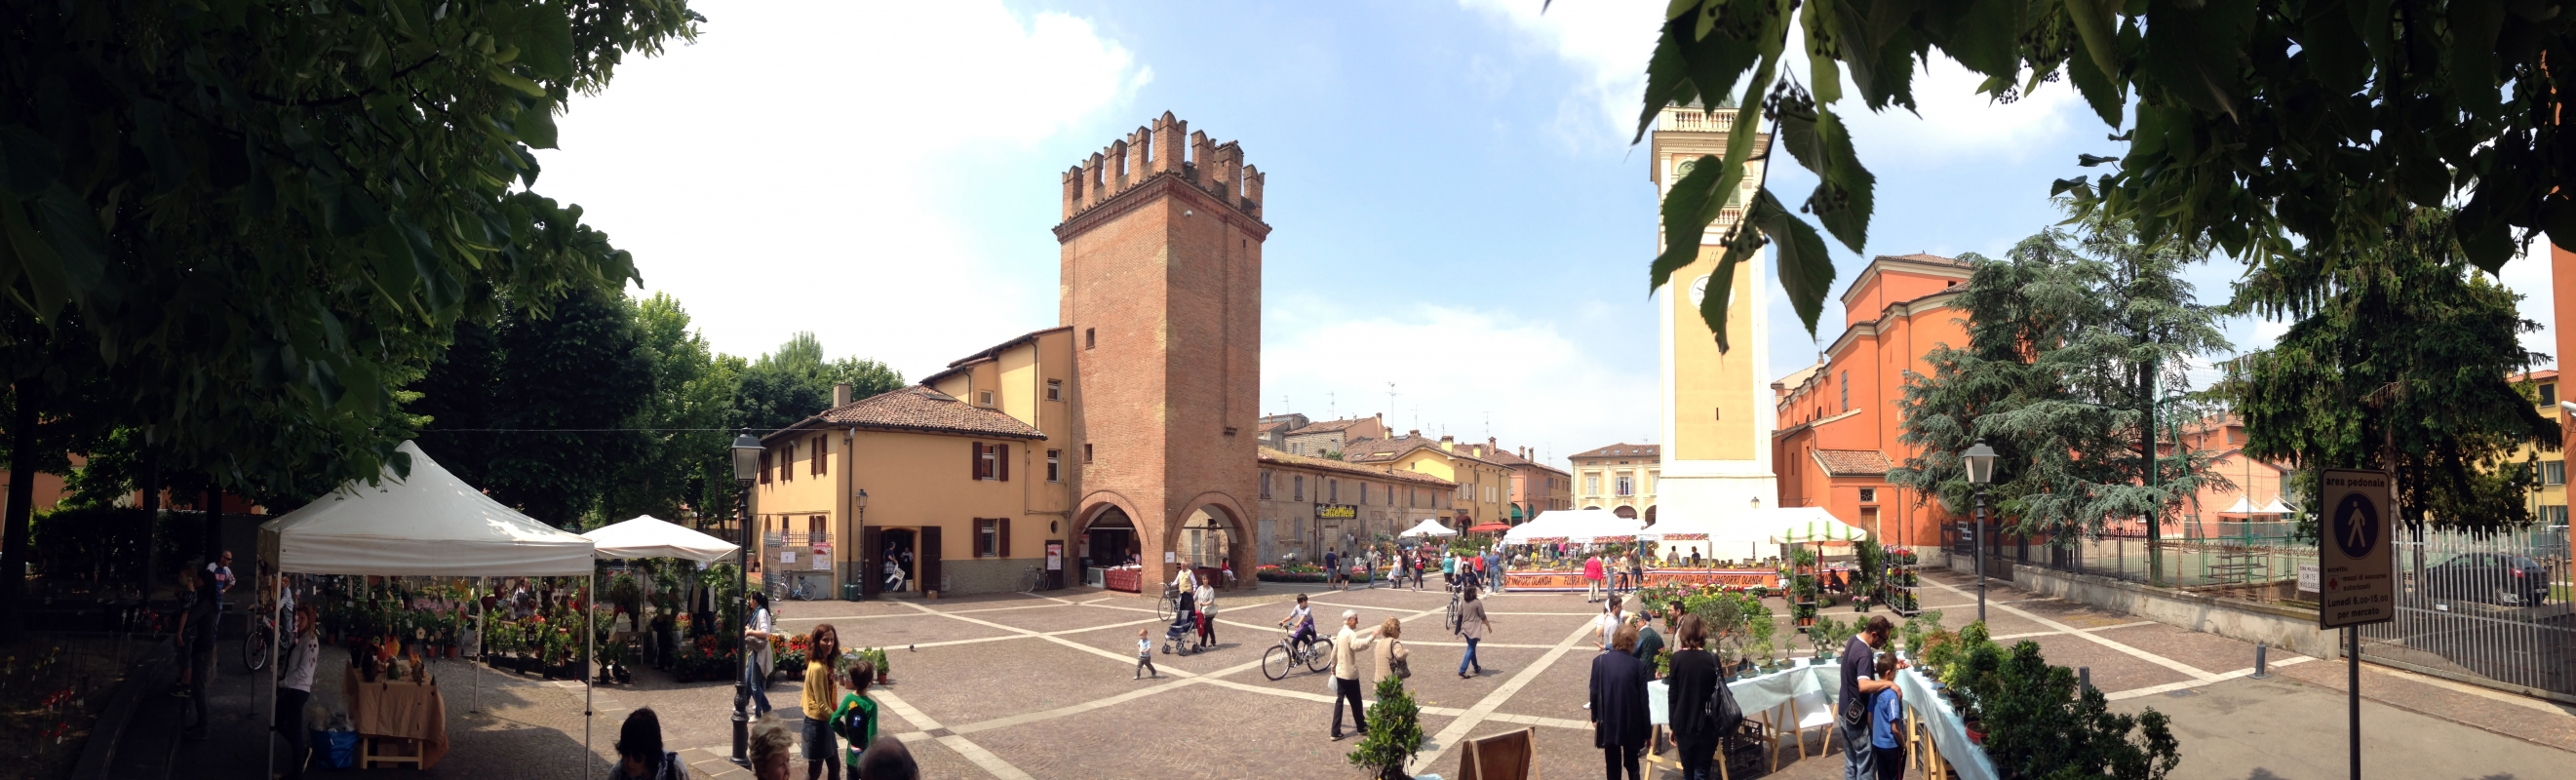 Panoramica Piazza con Torresotto Caliceti - FabioSchiavina